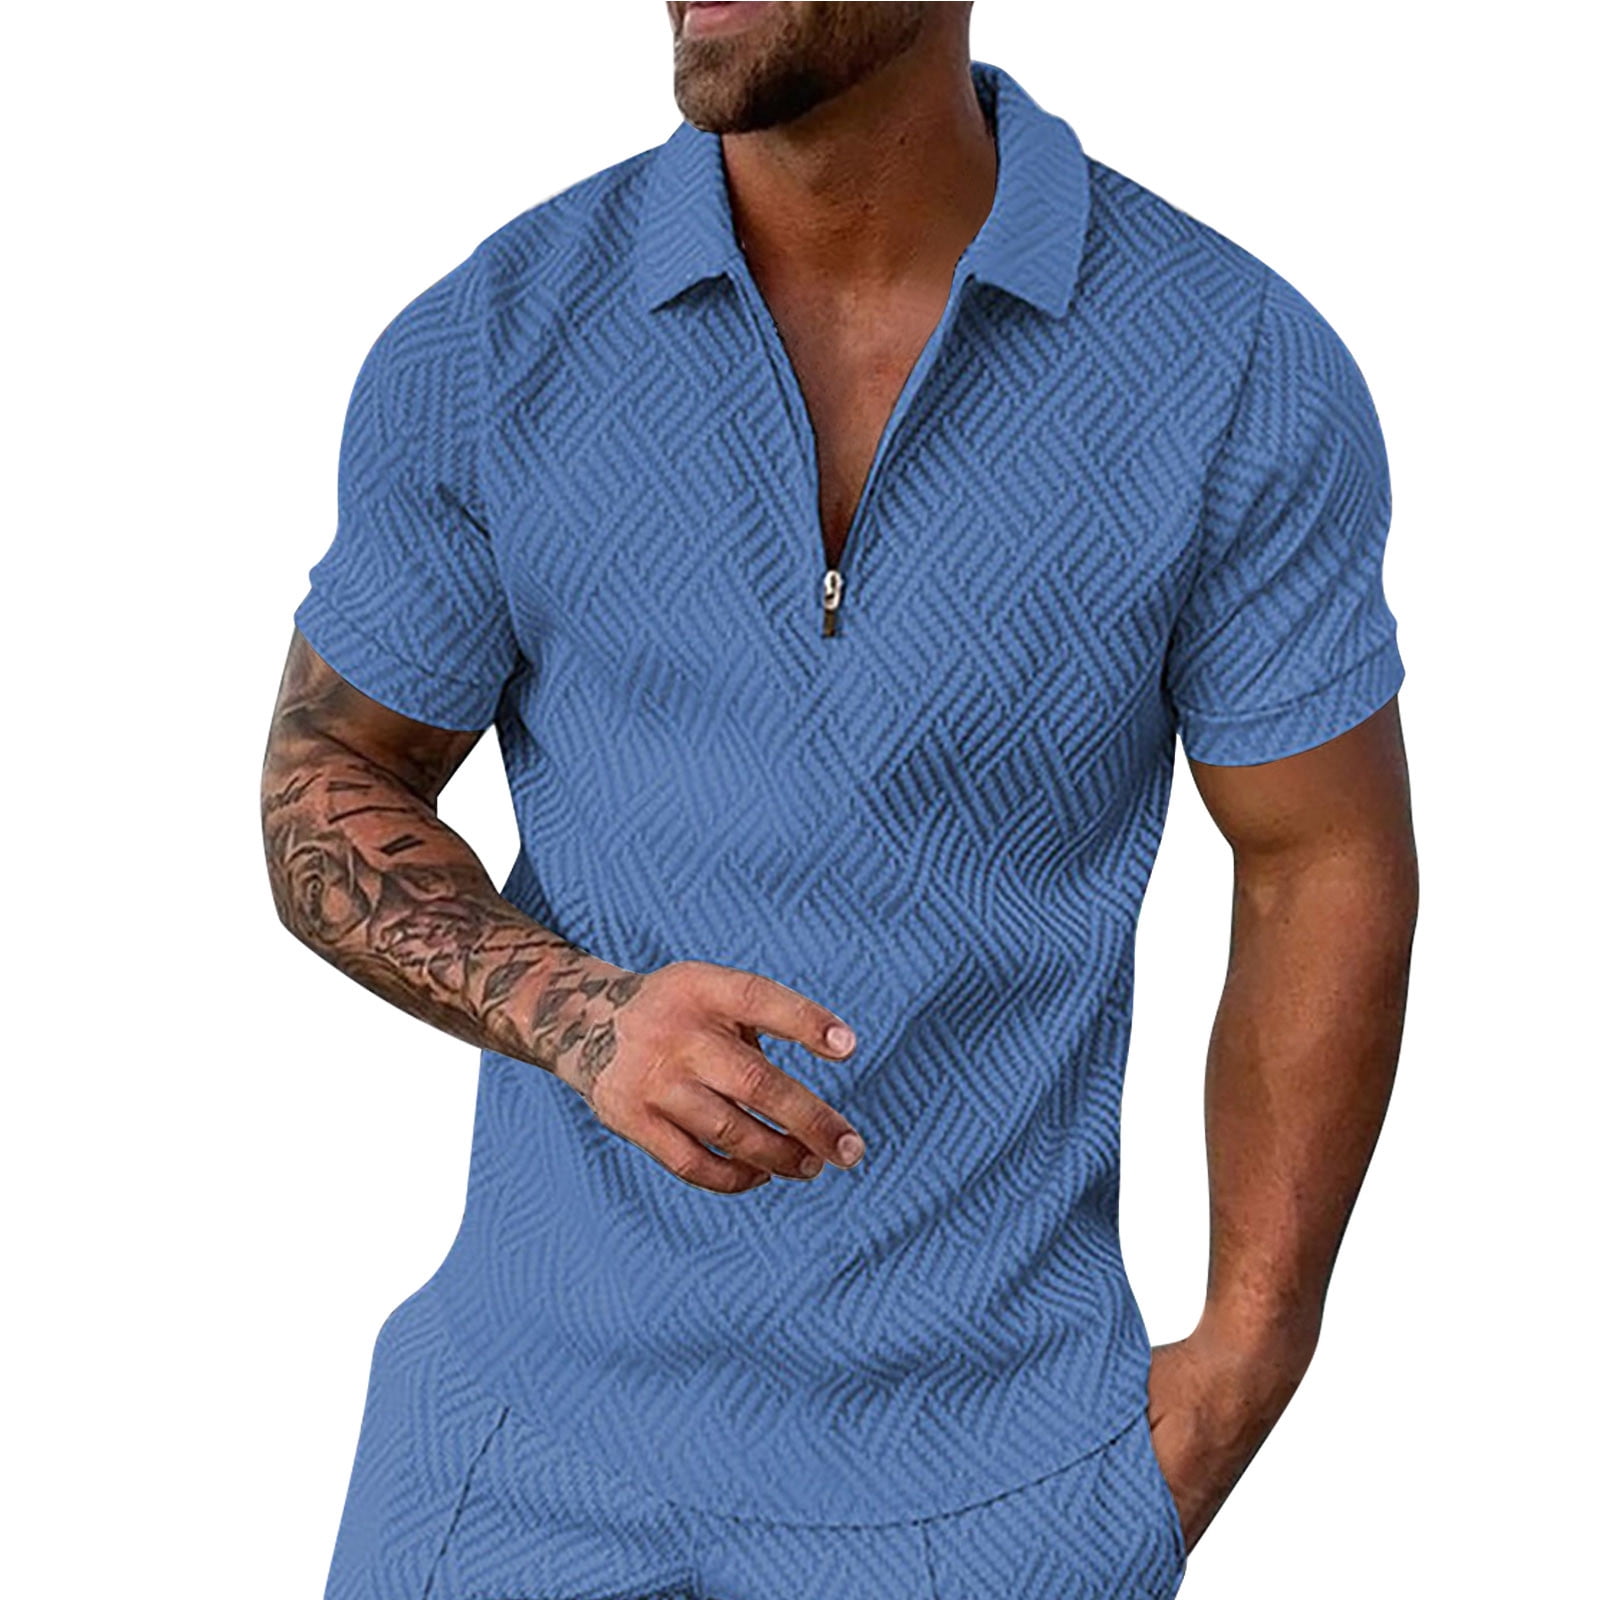 B91xZ Work Shirts For Men Men's Shirt Summer Outfits Casual Zipper Up Short  Sleeve Shirt Suit For Men Cropped T Shirts for Men Polo Shirts For Men Blue  M 